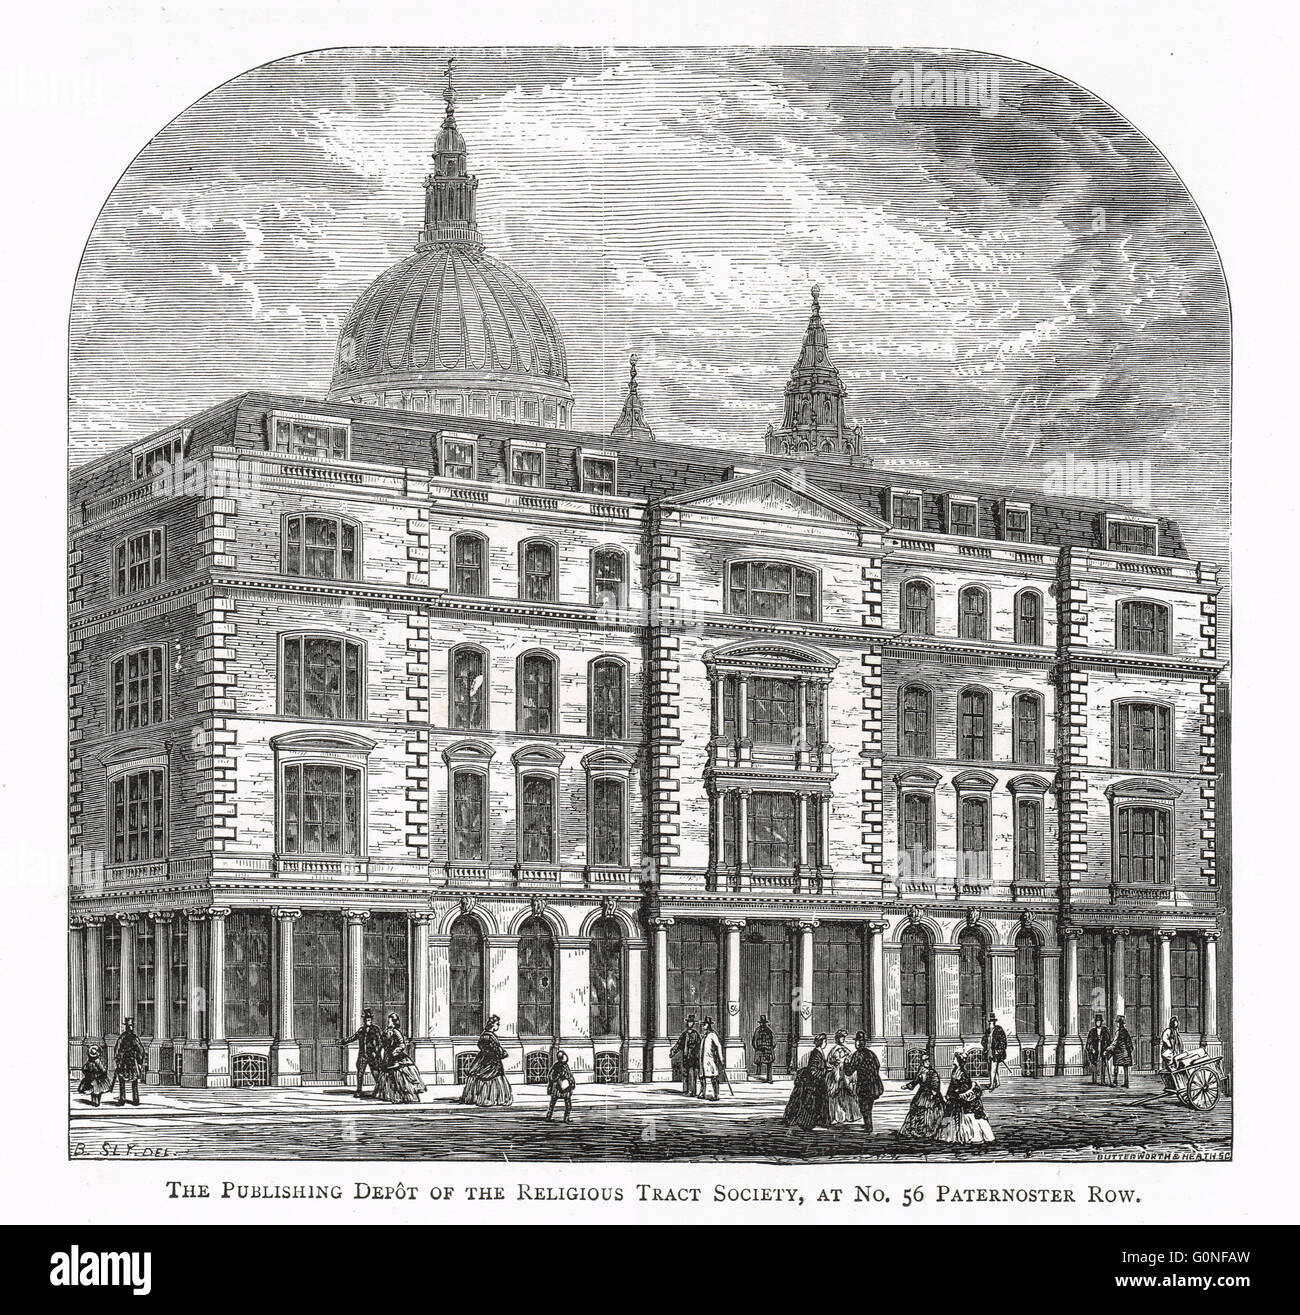 Le dépôt de l'édition de la Religious Tract Society, 56 rangs Paternoster, Londres, Angleterre au xixe siècle Banque D'Images